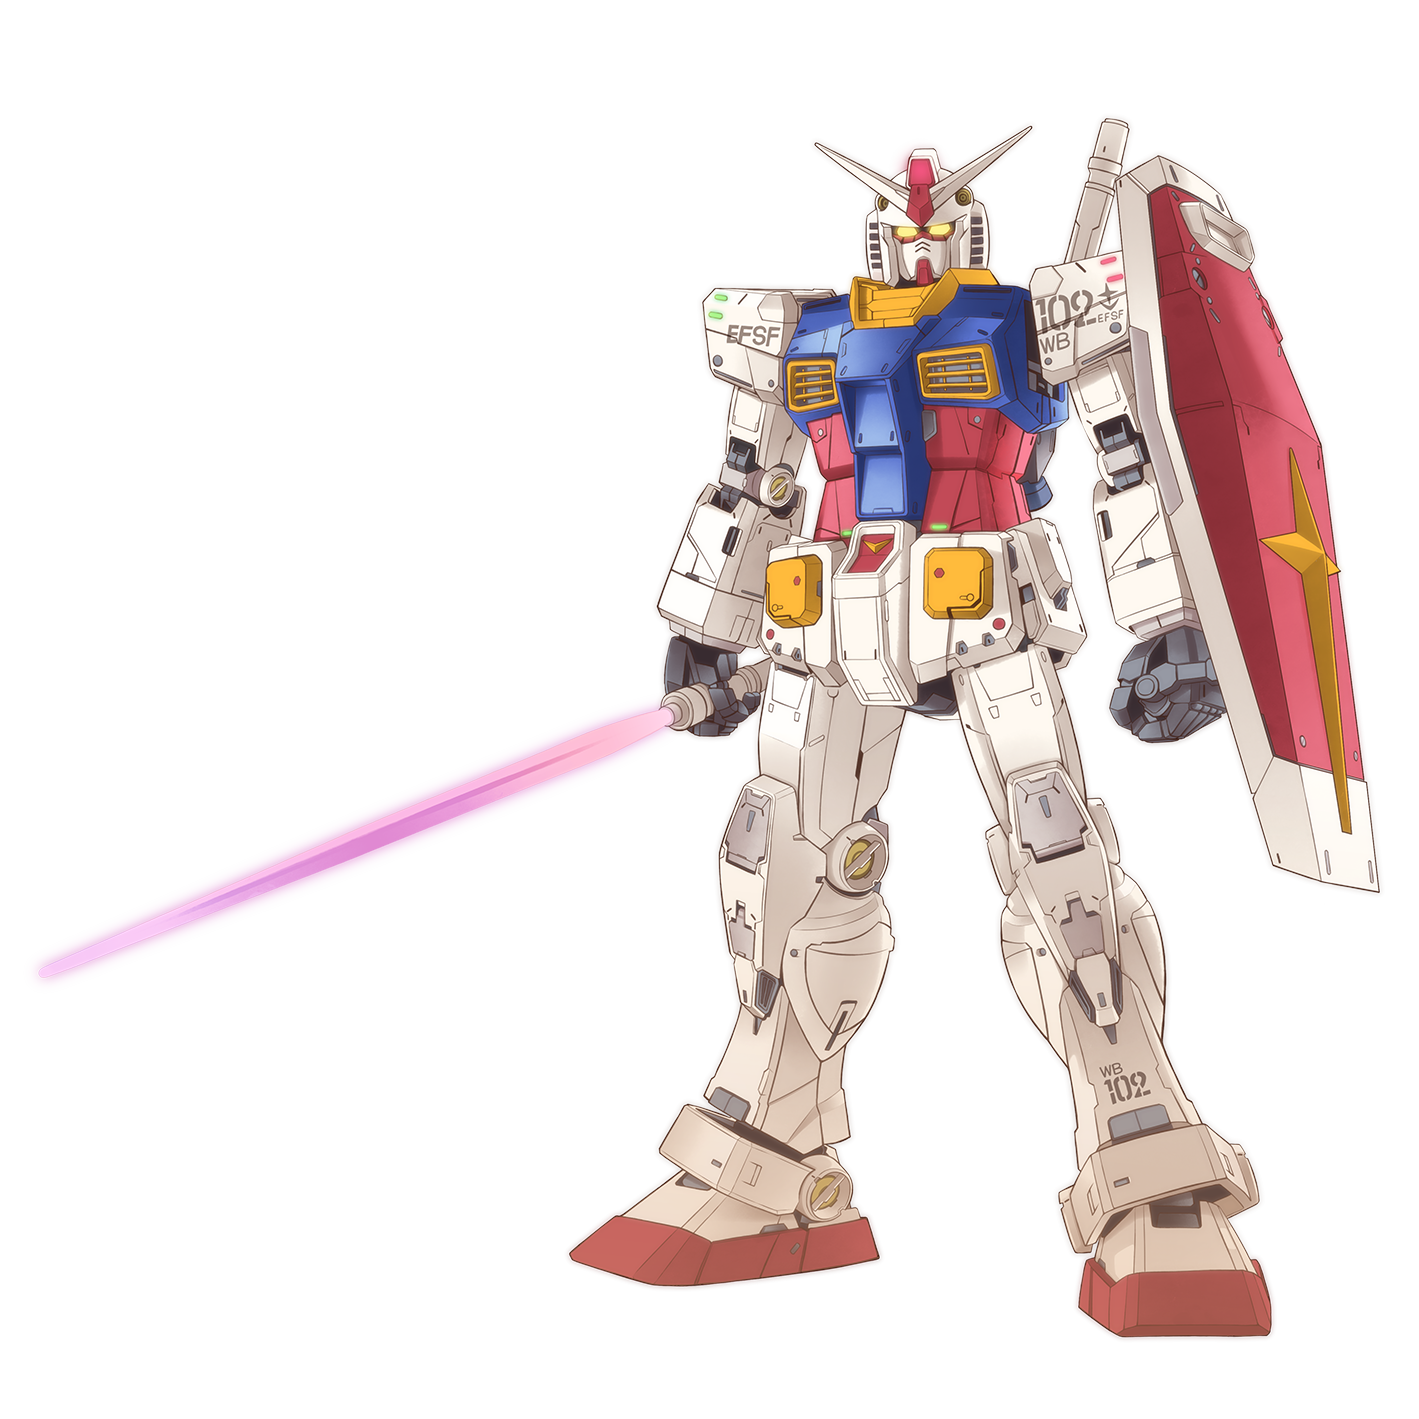 Anime Mechs Super Robot Taisen Gundam Mobile Suit Gundam RX 78 Gundam Artwork Digital Art Fan Art Si 1419x1419